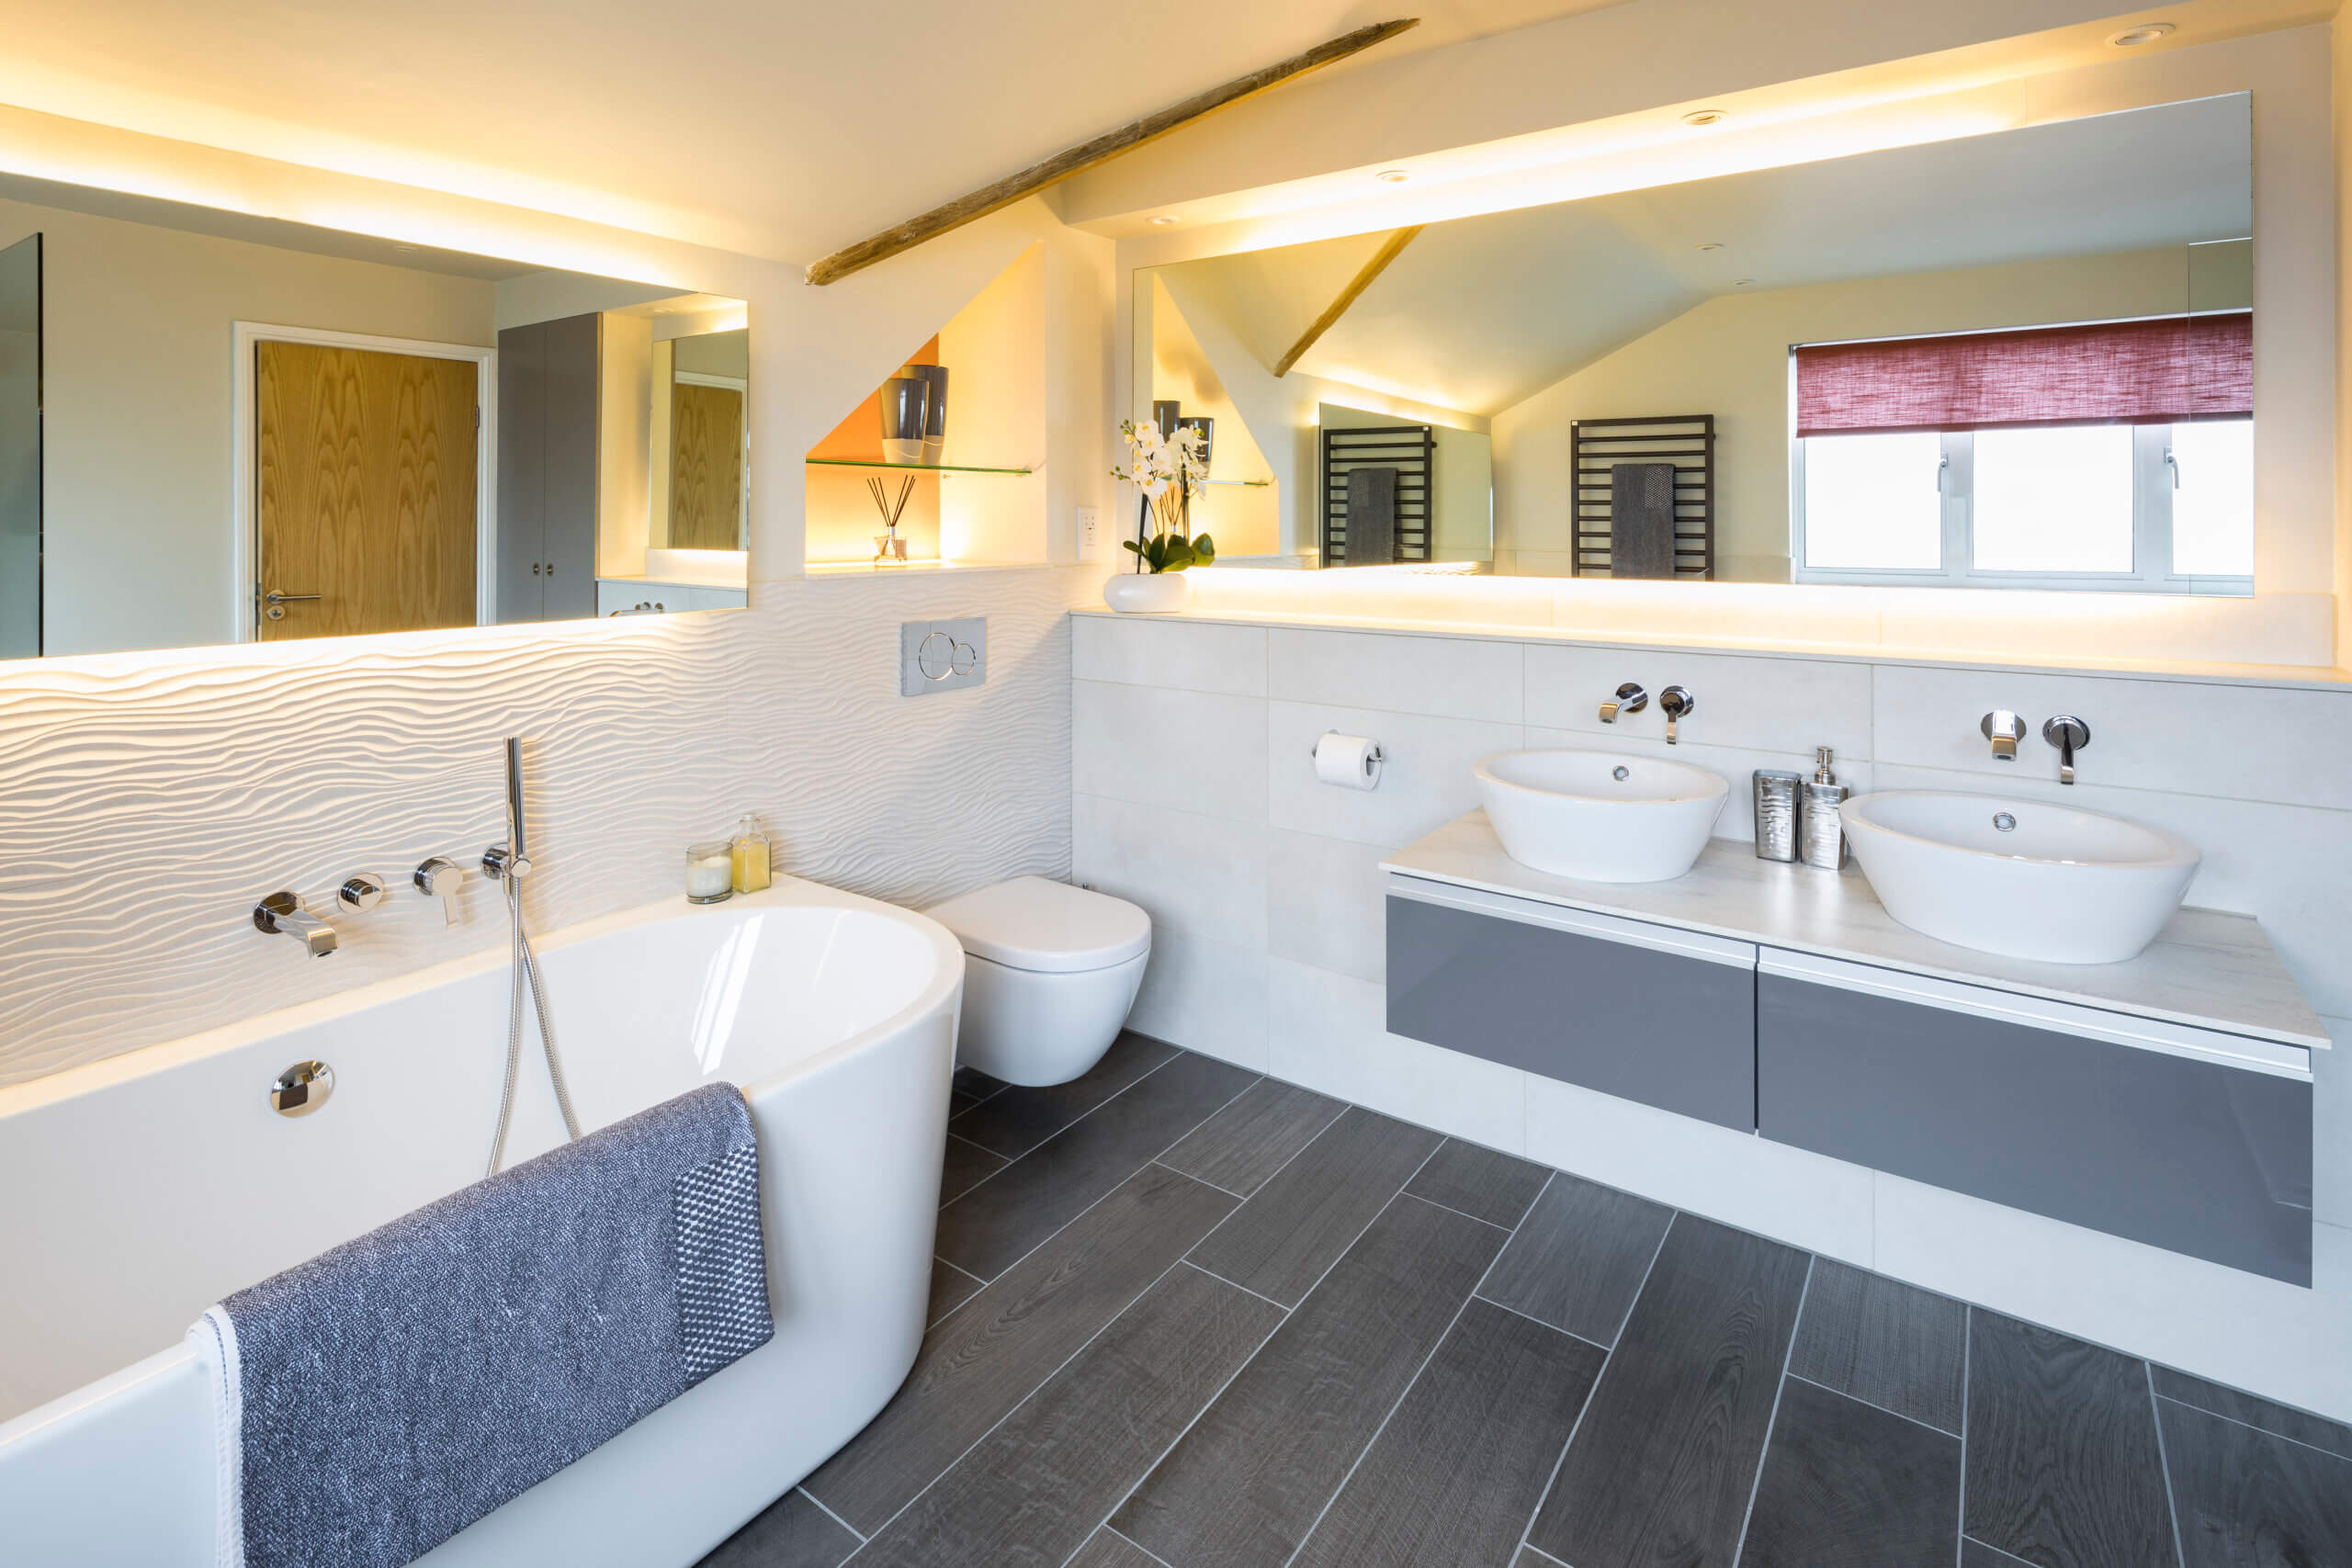 Bathroom + Kitchen Eleven - Master Bathroom contemporary design